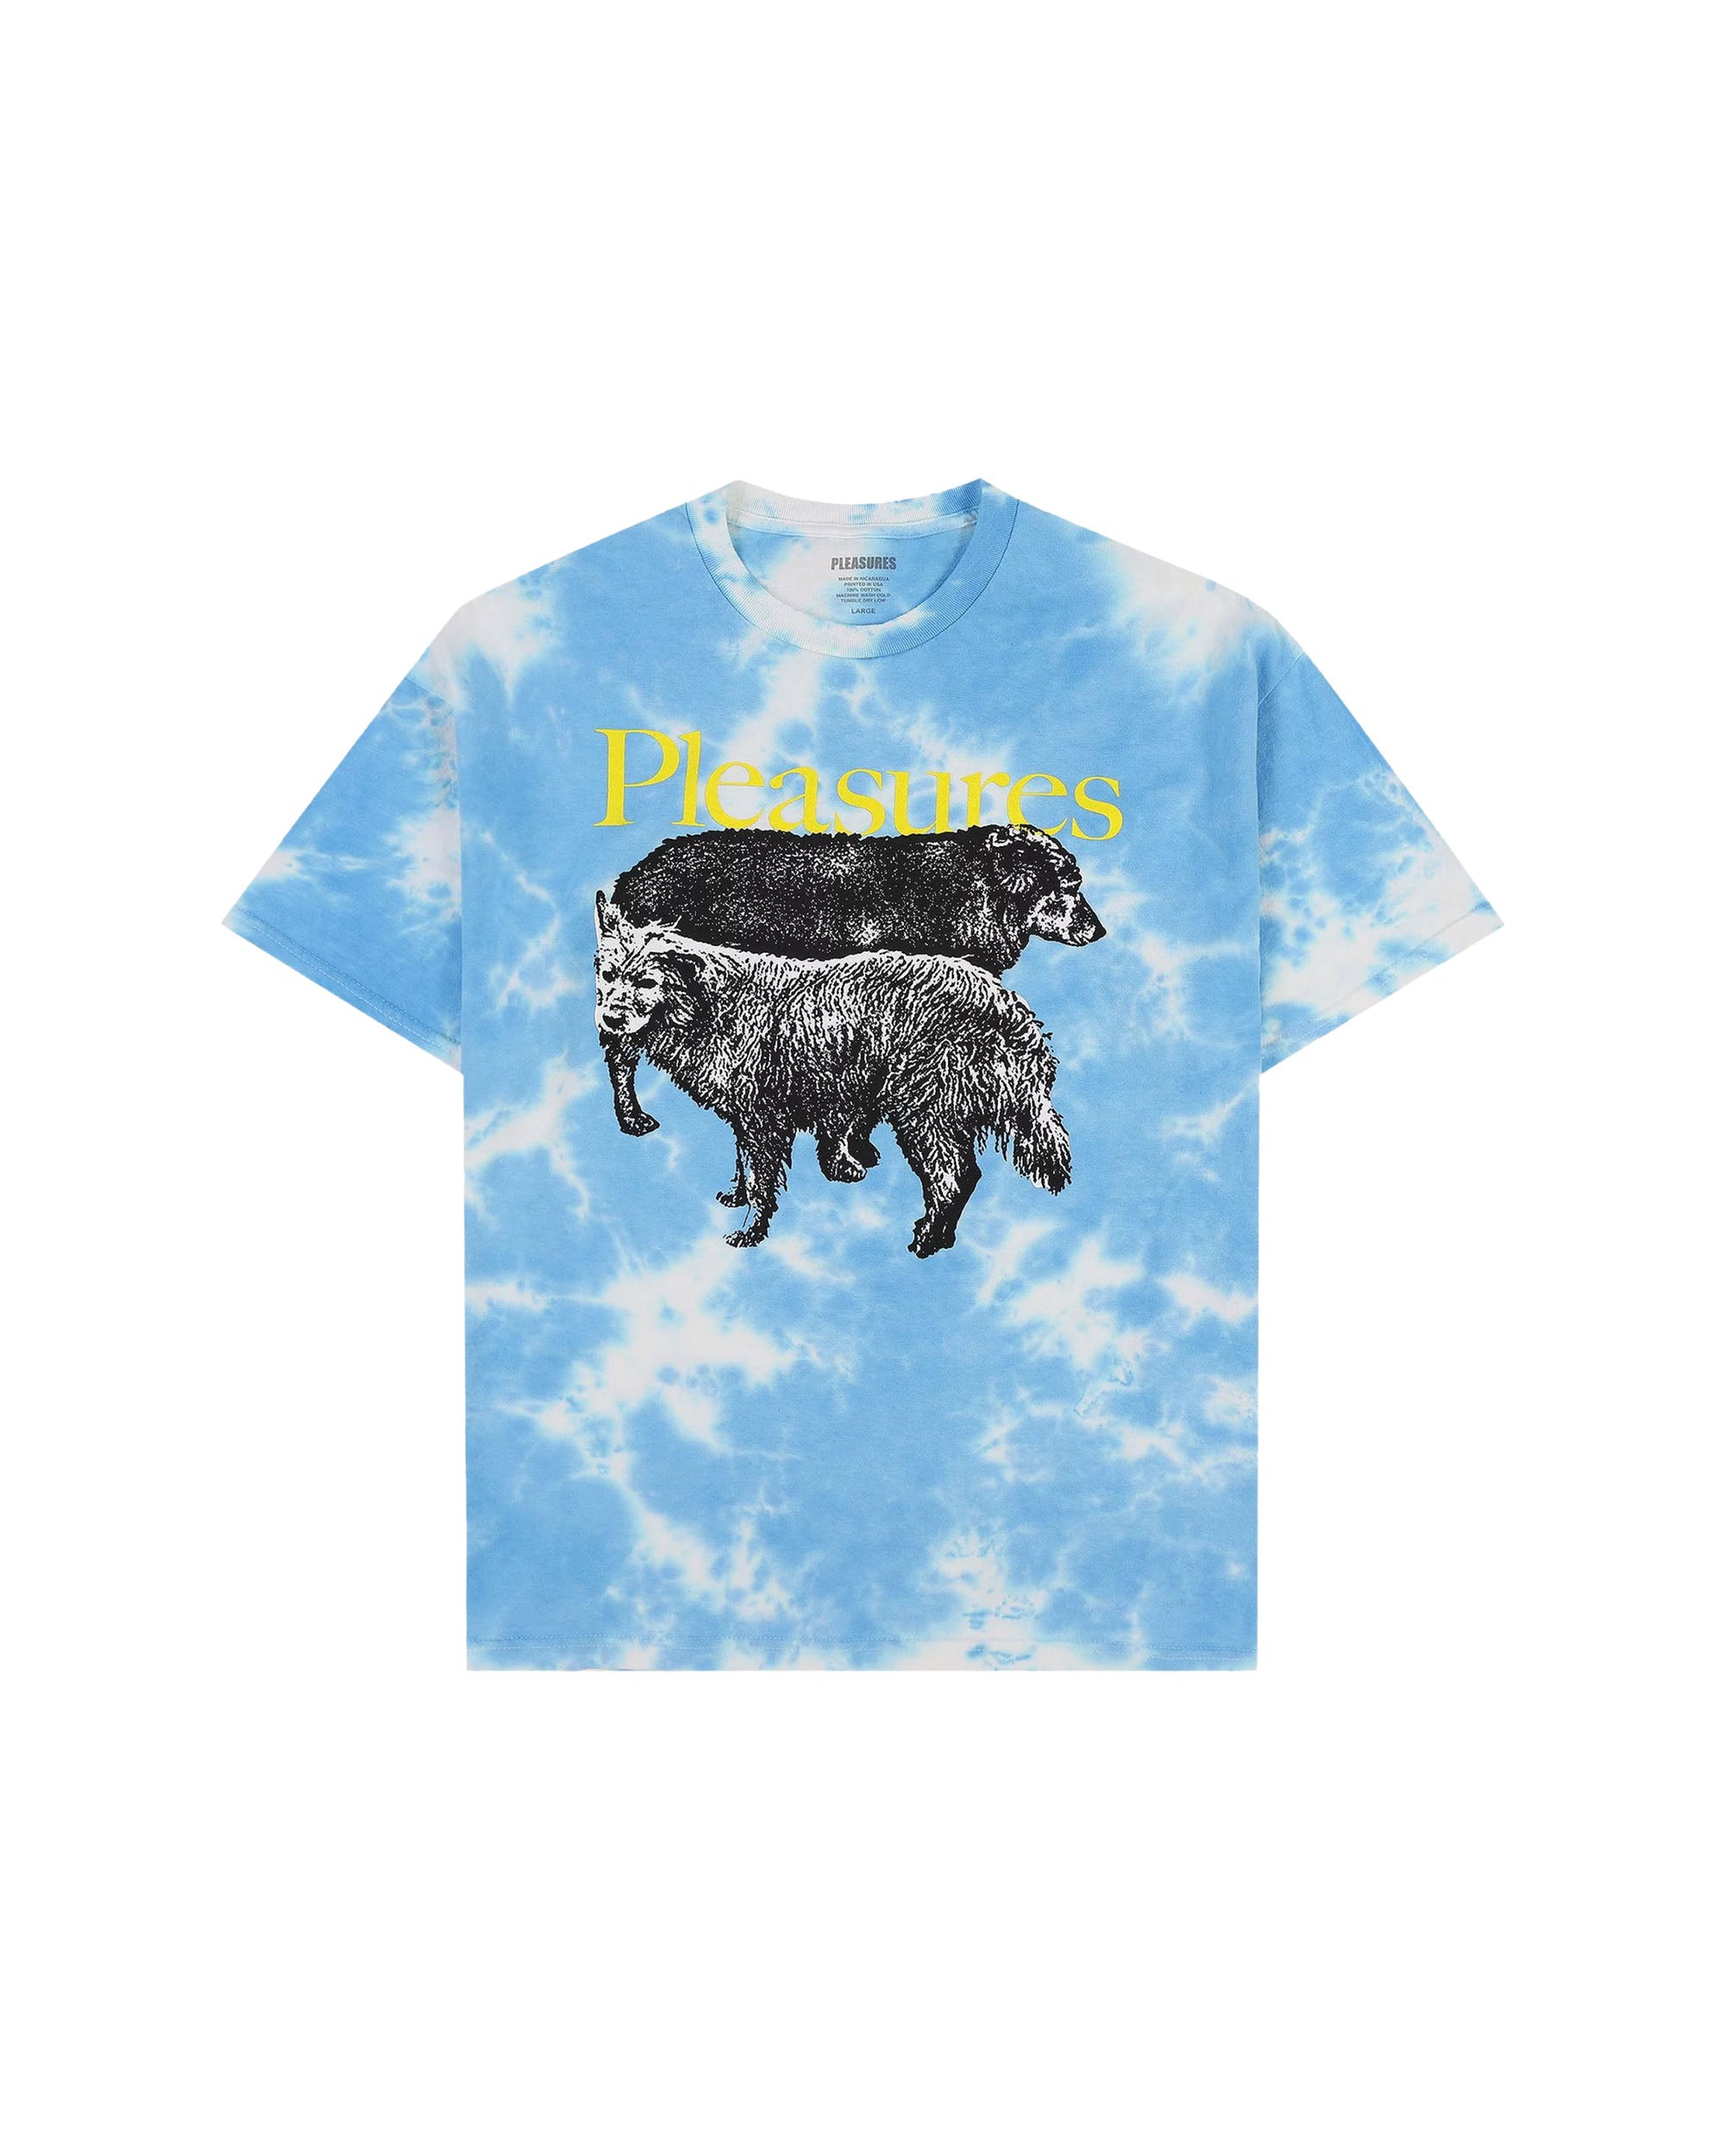 Wet Dogs T-shirt - Blue Dye